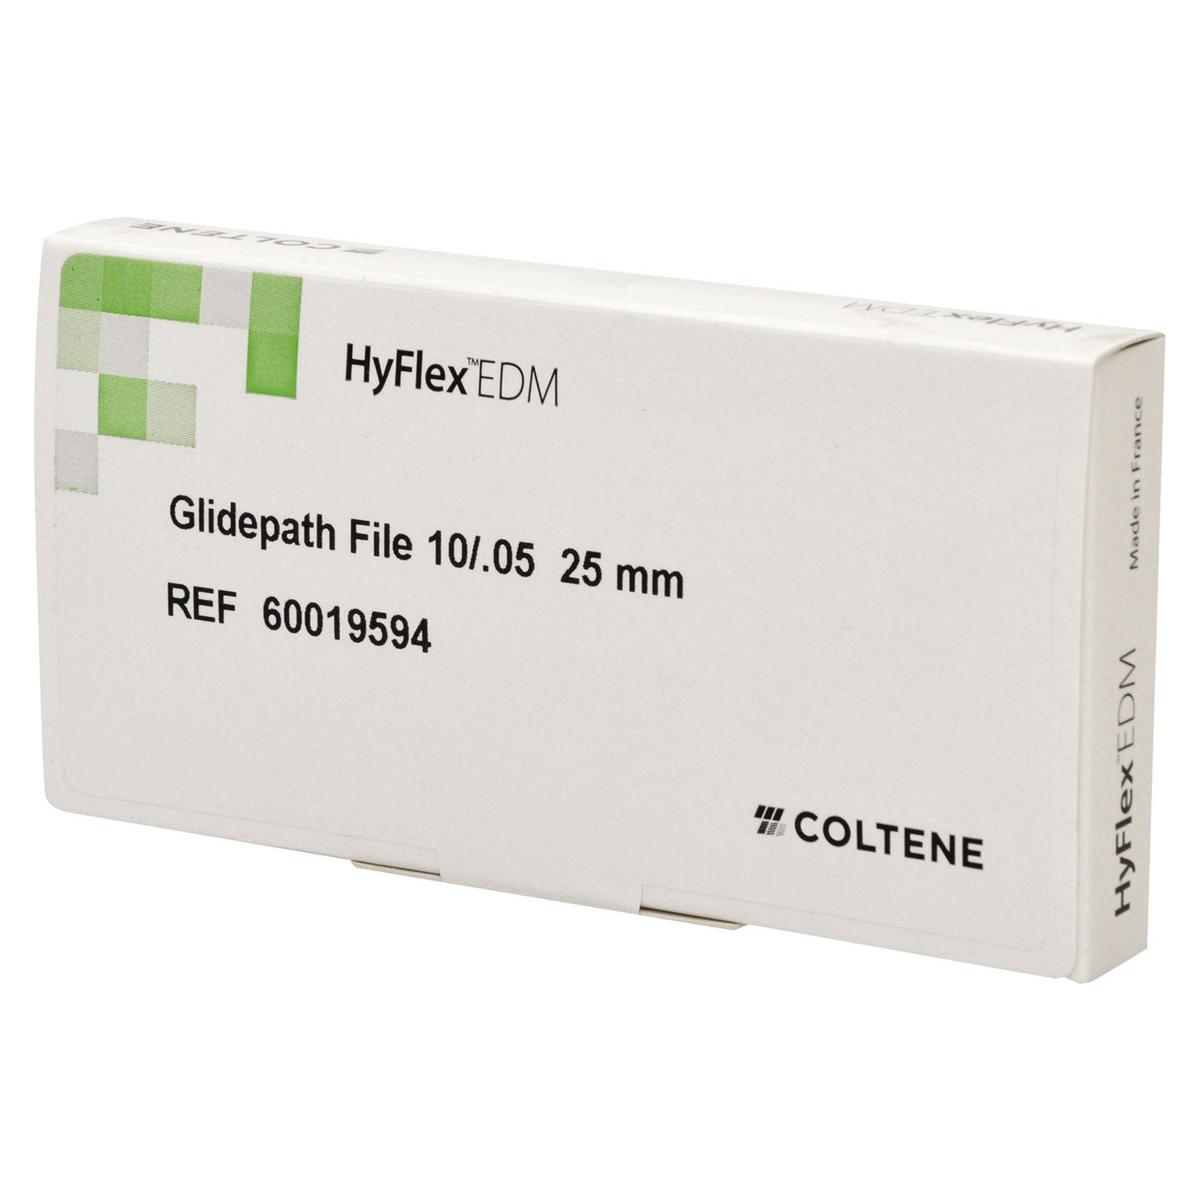 HyFlex EDM niti File 10/05 Glidepath file  25mm /3 pz